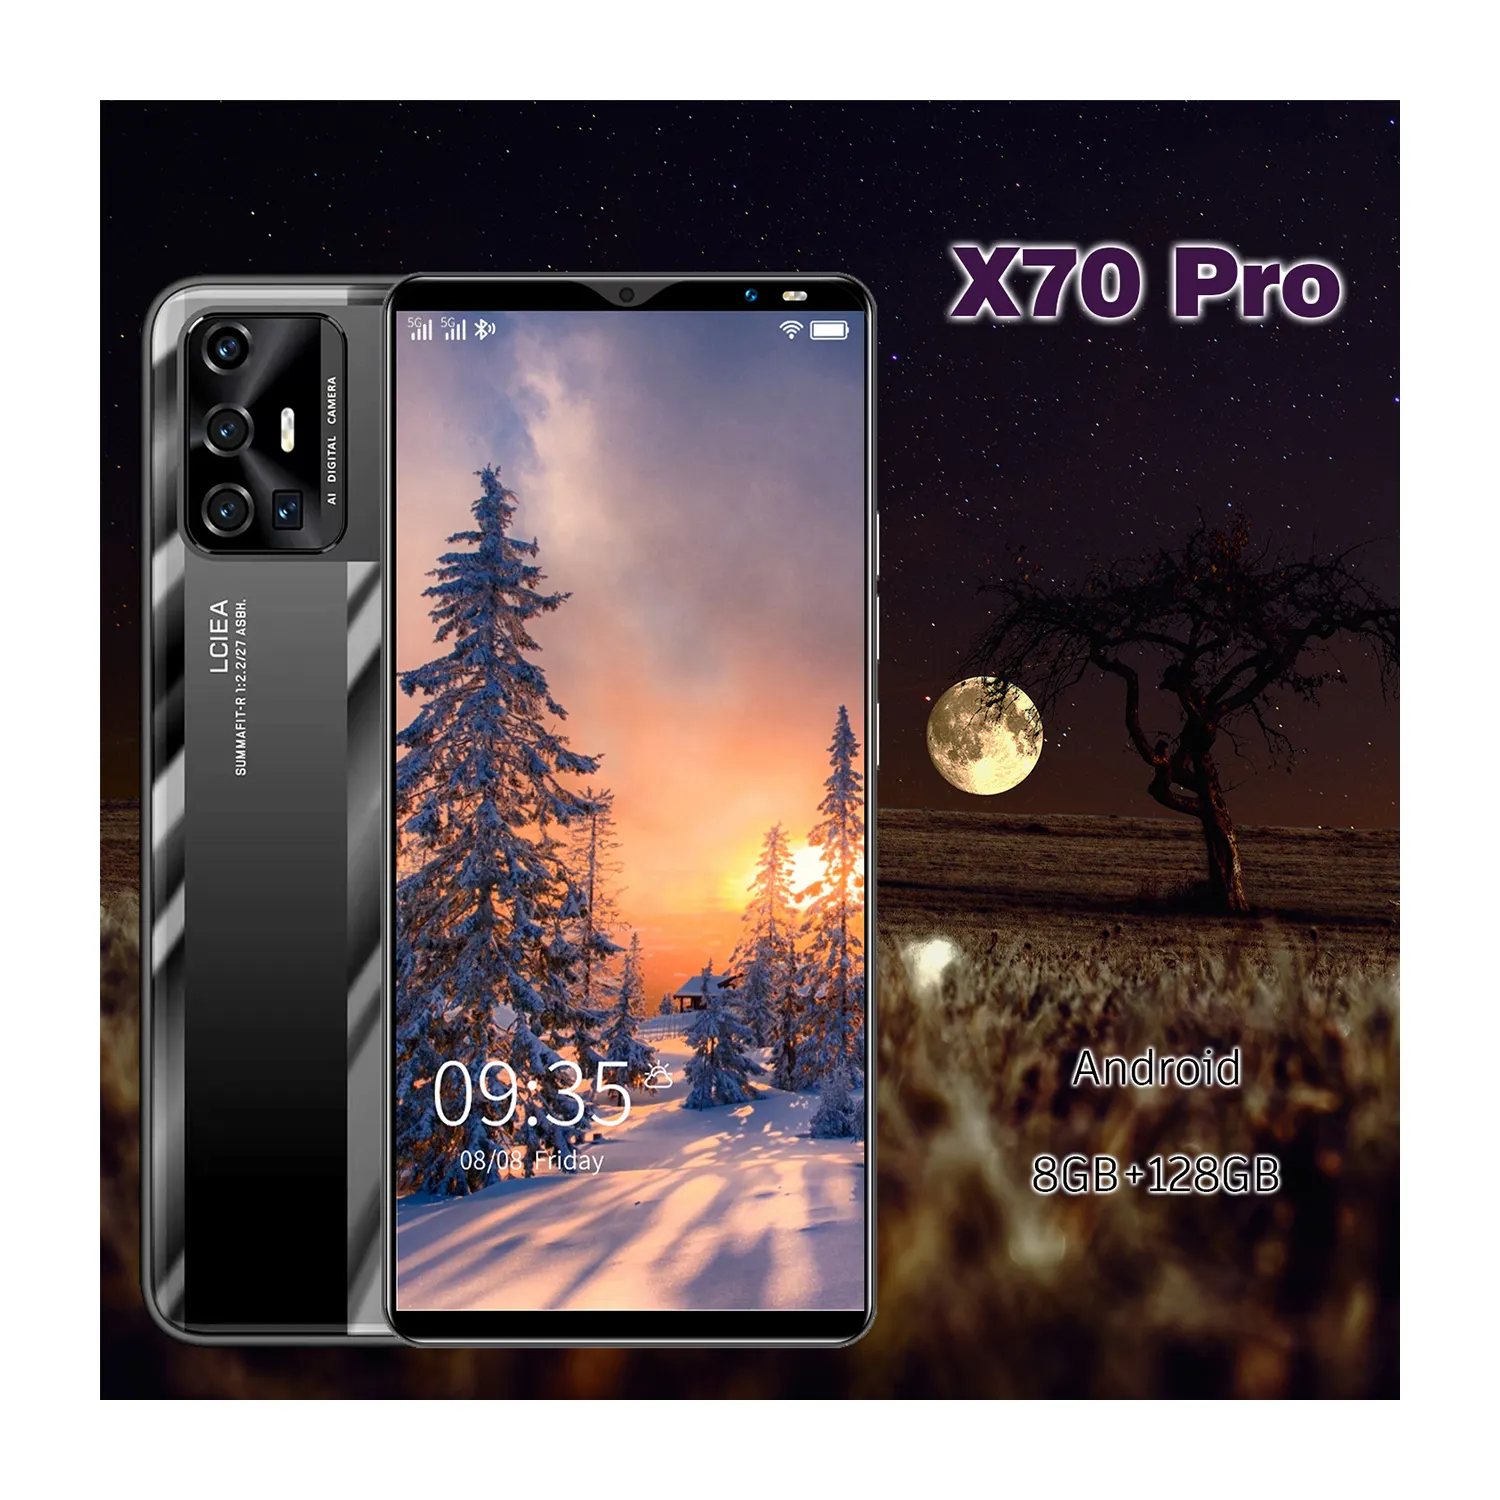 Горячая распродажа! X70PRO 5,8 дюймов Dual Sim телефонов смартфонов на базе Android разблокирована 5G сотовый телефон Сделано в Китае мобильного телефона Android